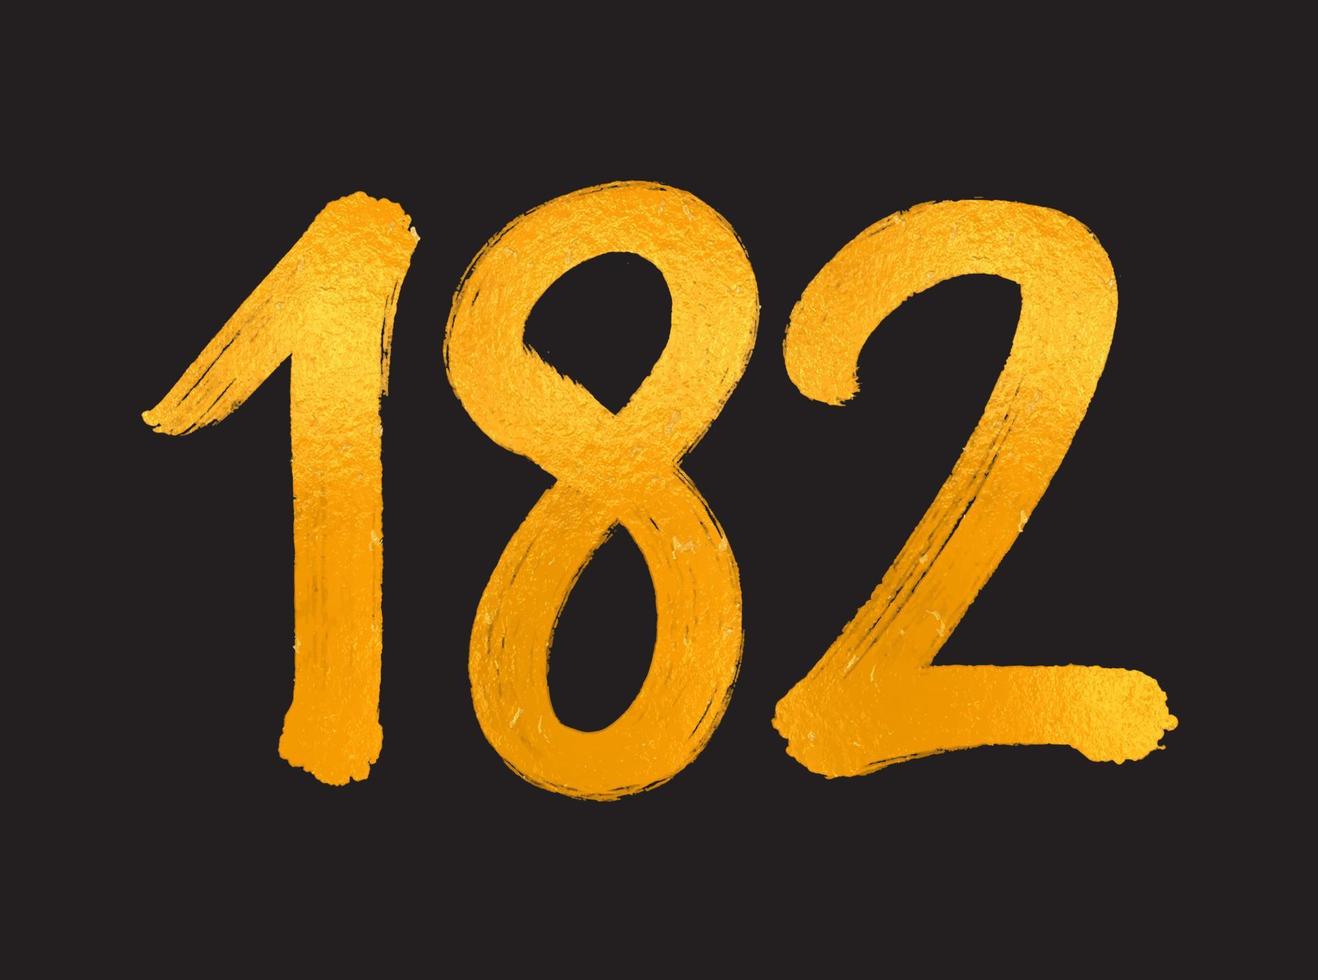 182 numero logo vettore illustrazione, 182 anni anniversario celebrazione vettore modello, 182° compleanno, oro lettering numeri spazzola disegno mano disegnato schizzo, numero logo design per Stampa, t camicia